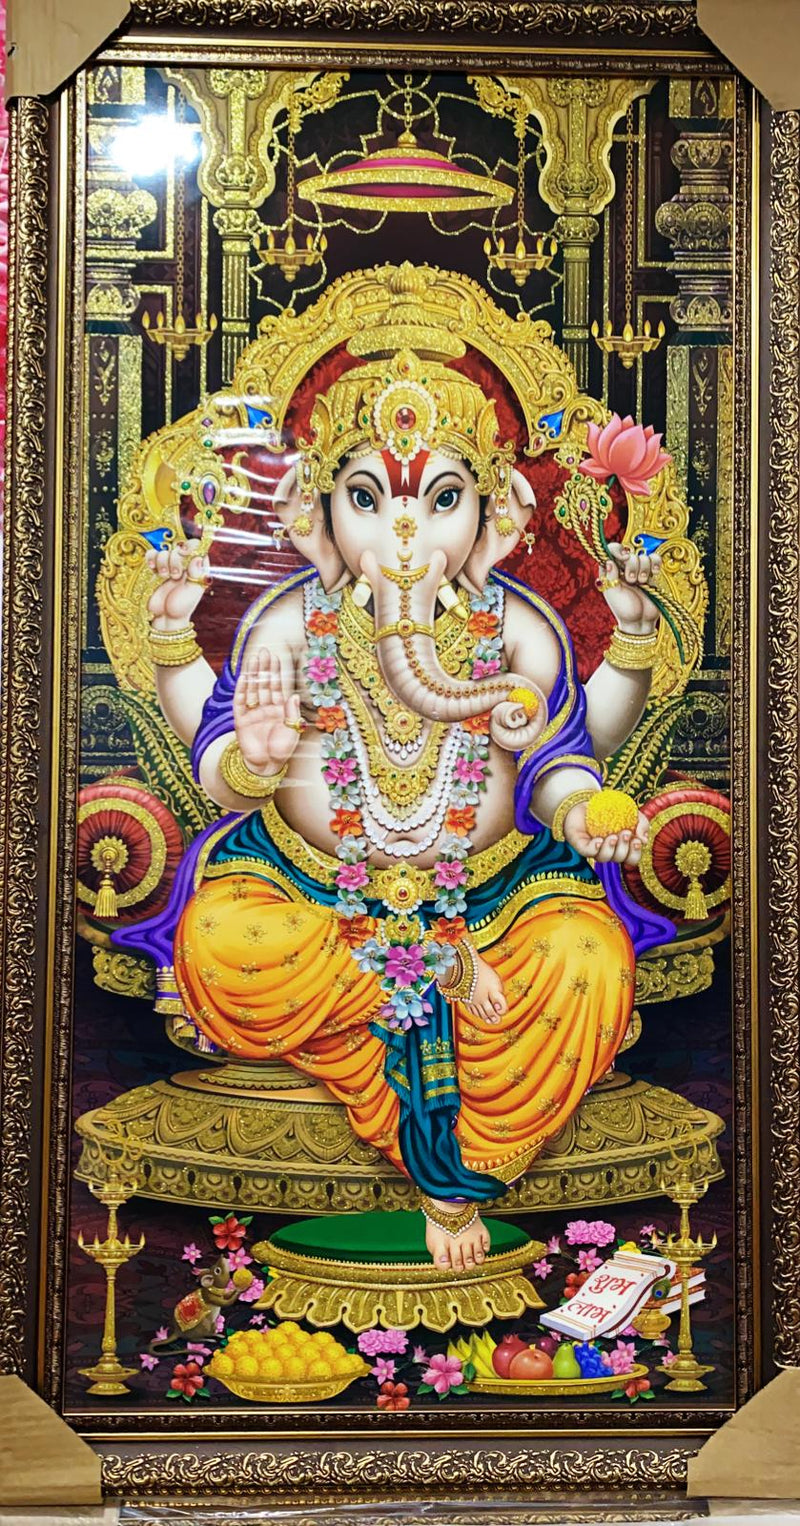 Ganesh JI (Pic Frame)